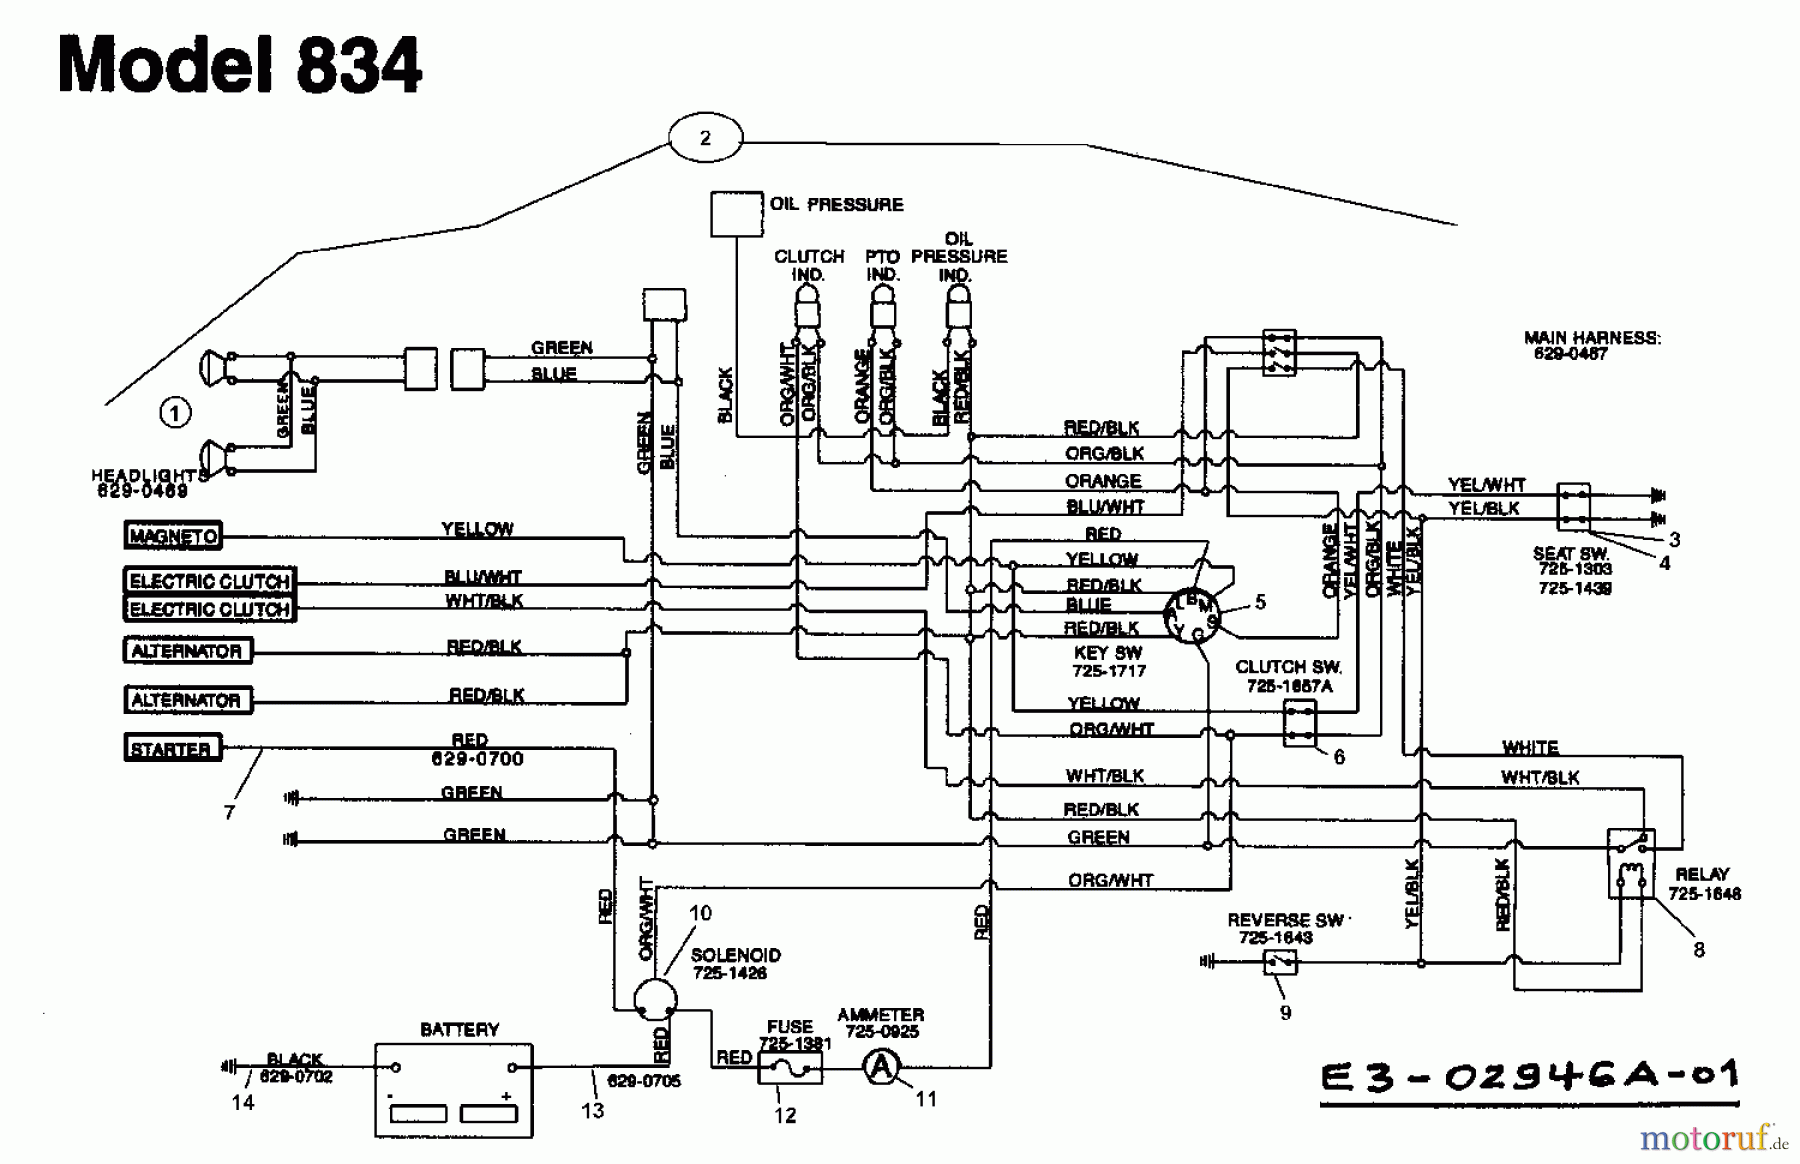  Yard-Man Garden tractors HH 8200 14AU834H643  (1999) Wiring diagram